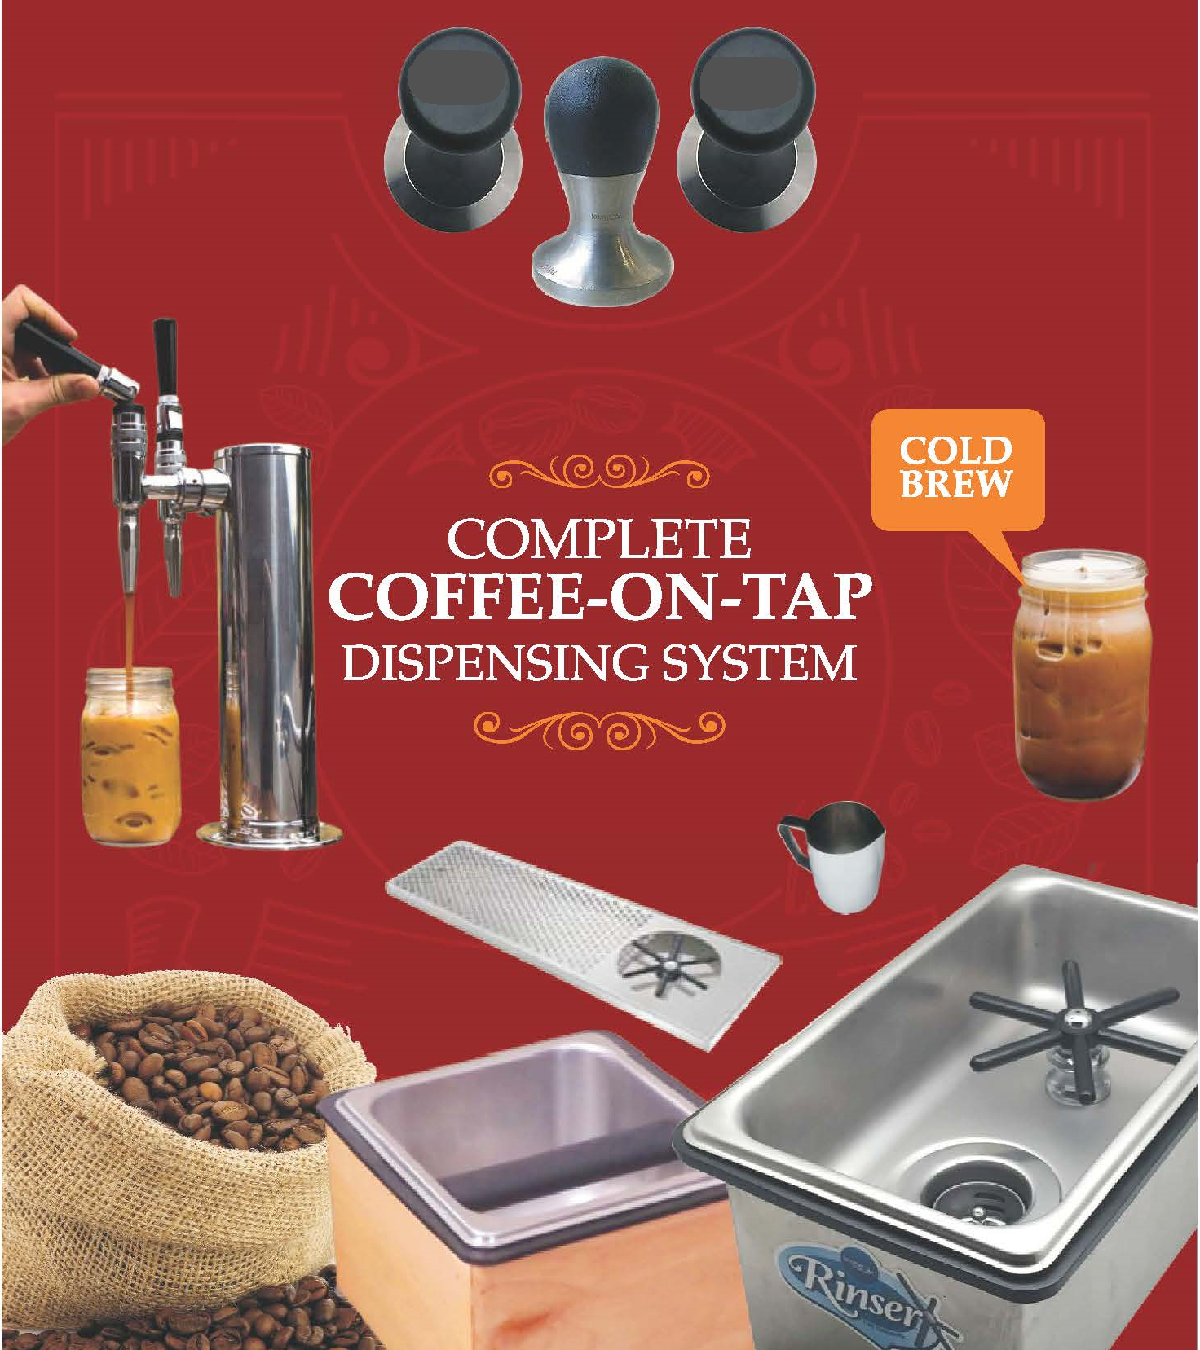 Prislusenstvo pre pripravu kavy - Barista - odkvapkavacie vanicky, umyvanie, tampery